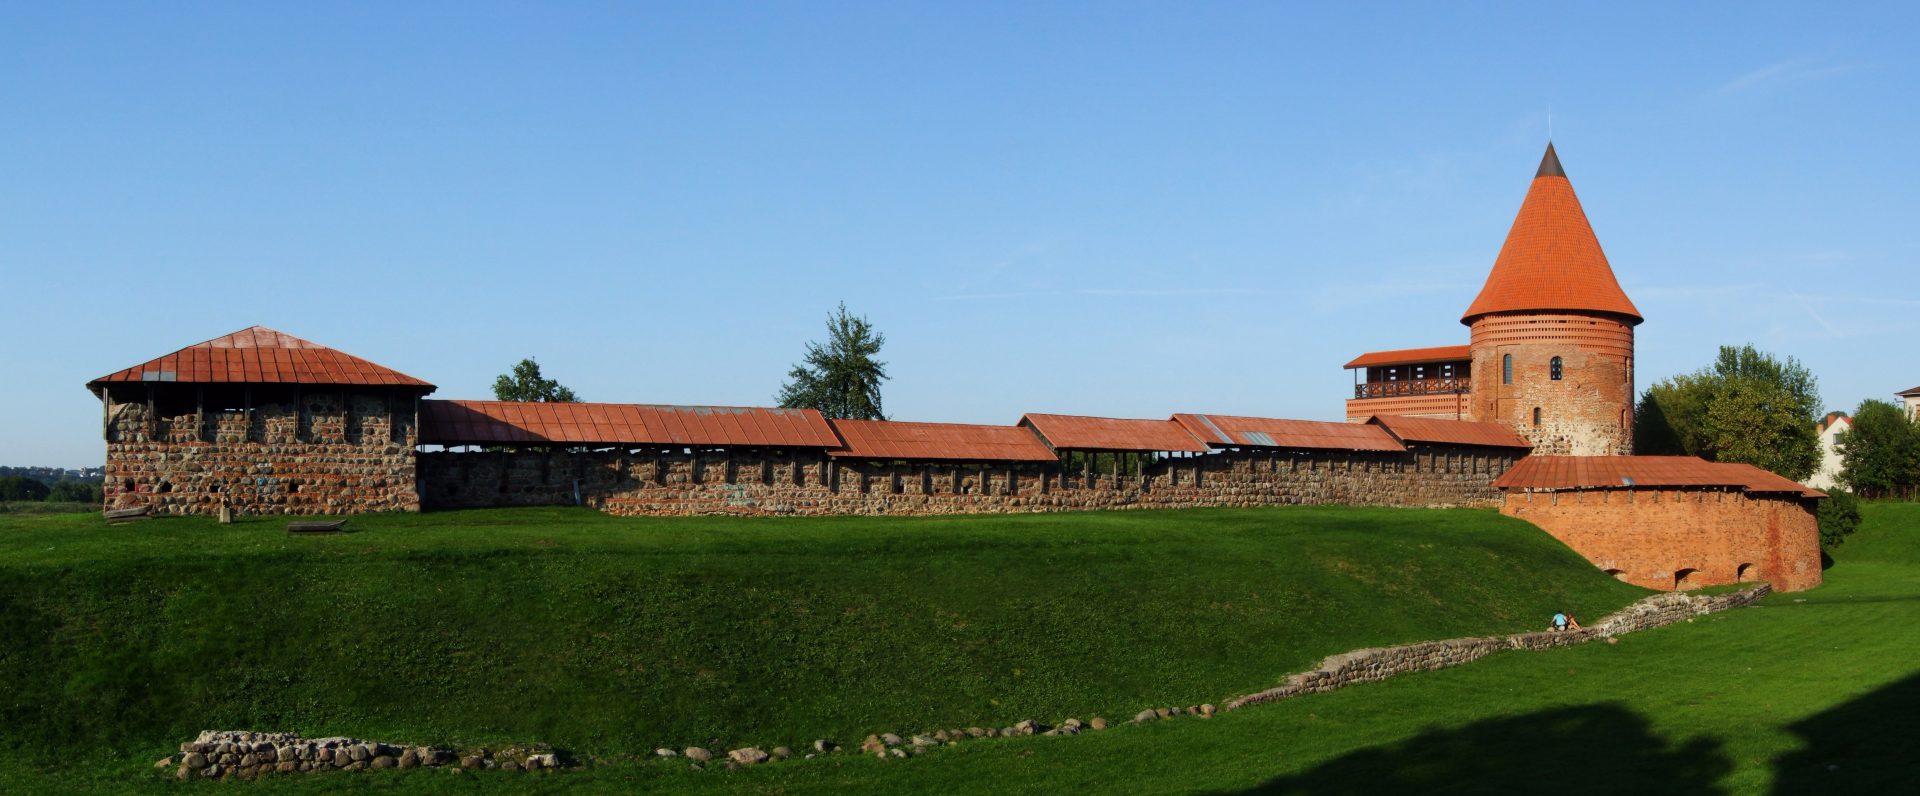 Kauno-pilis-Kaunas-Castle.jpg.jpg